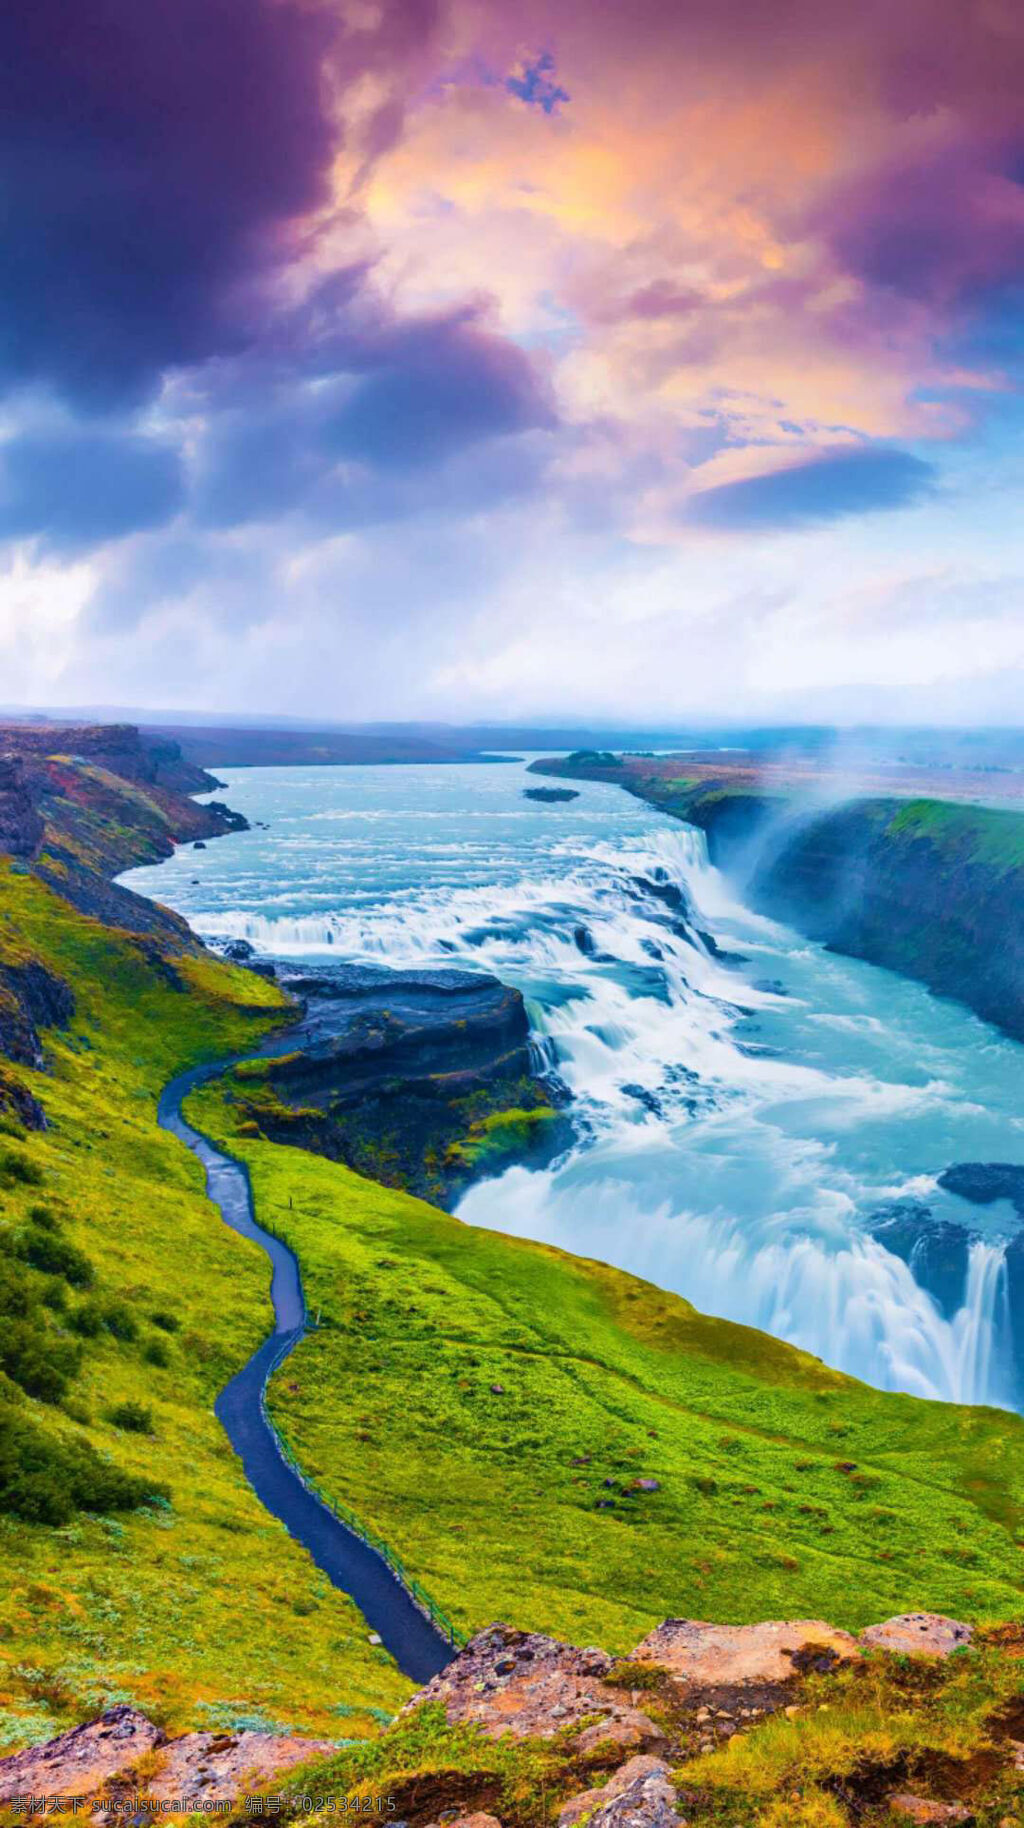 梦幻 般 自然风景 绿树 绿草 草坪 宽阔的河流 清澈的河水 五彩的天空 冰岛黄金圈 美丽的风景 旅游摄影